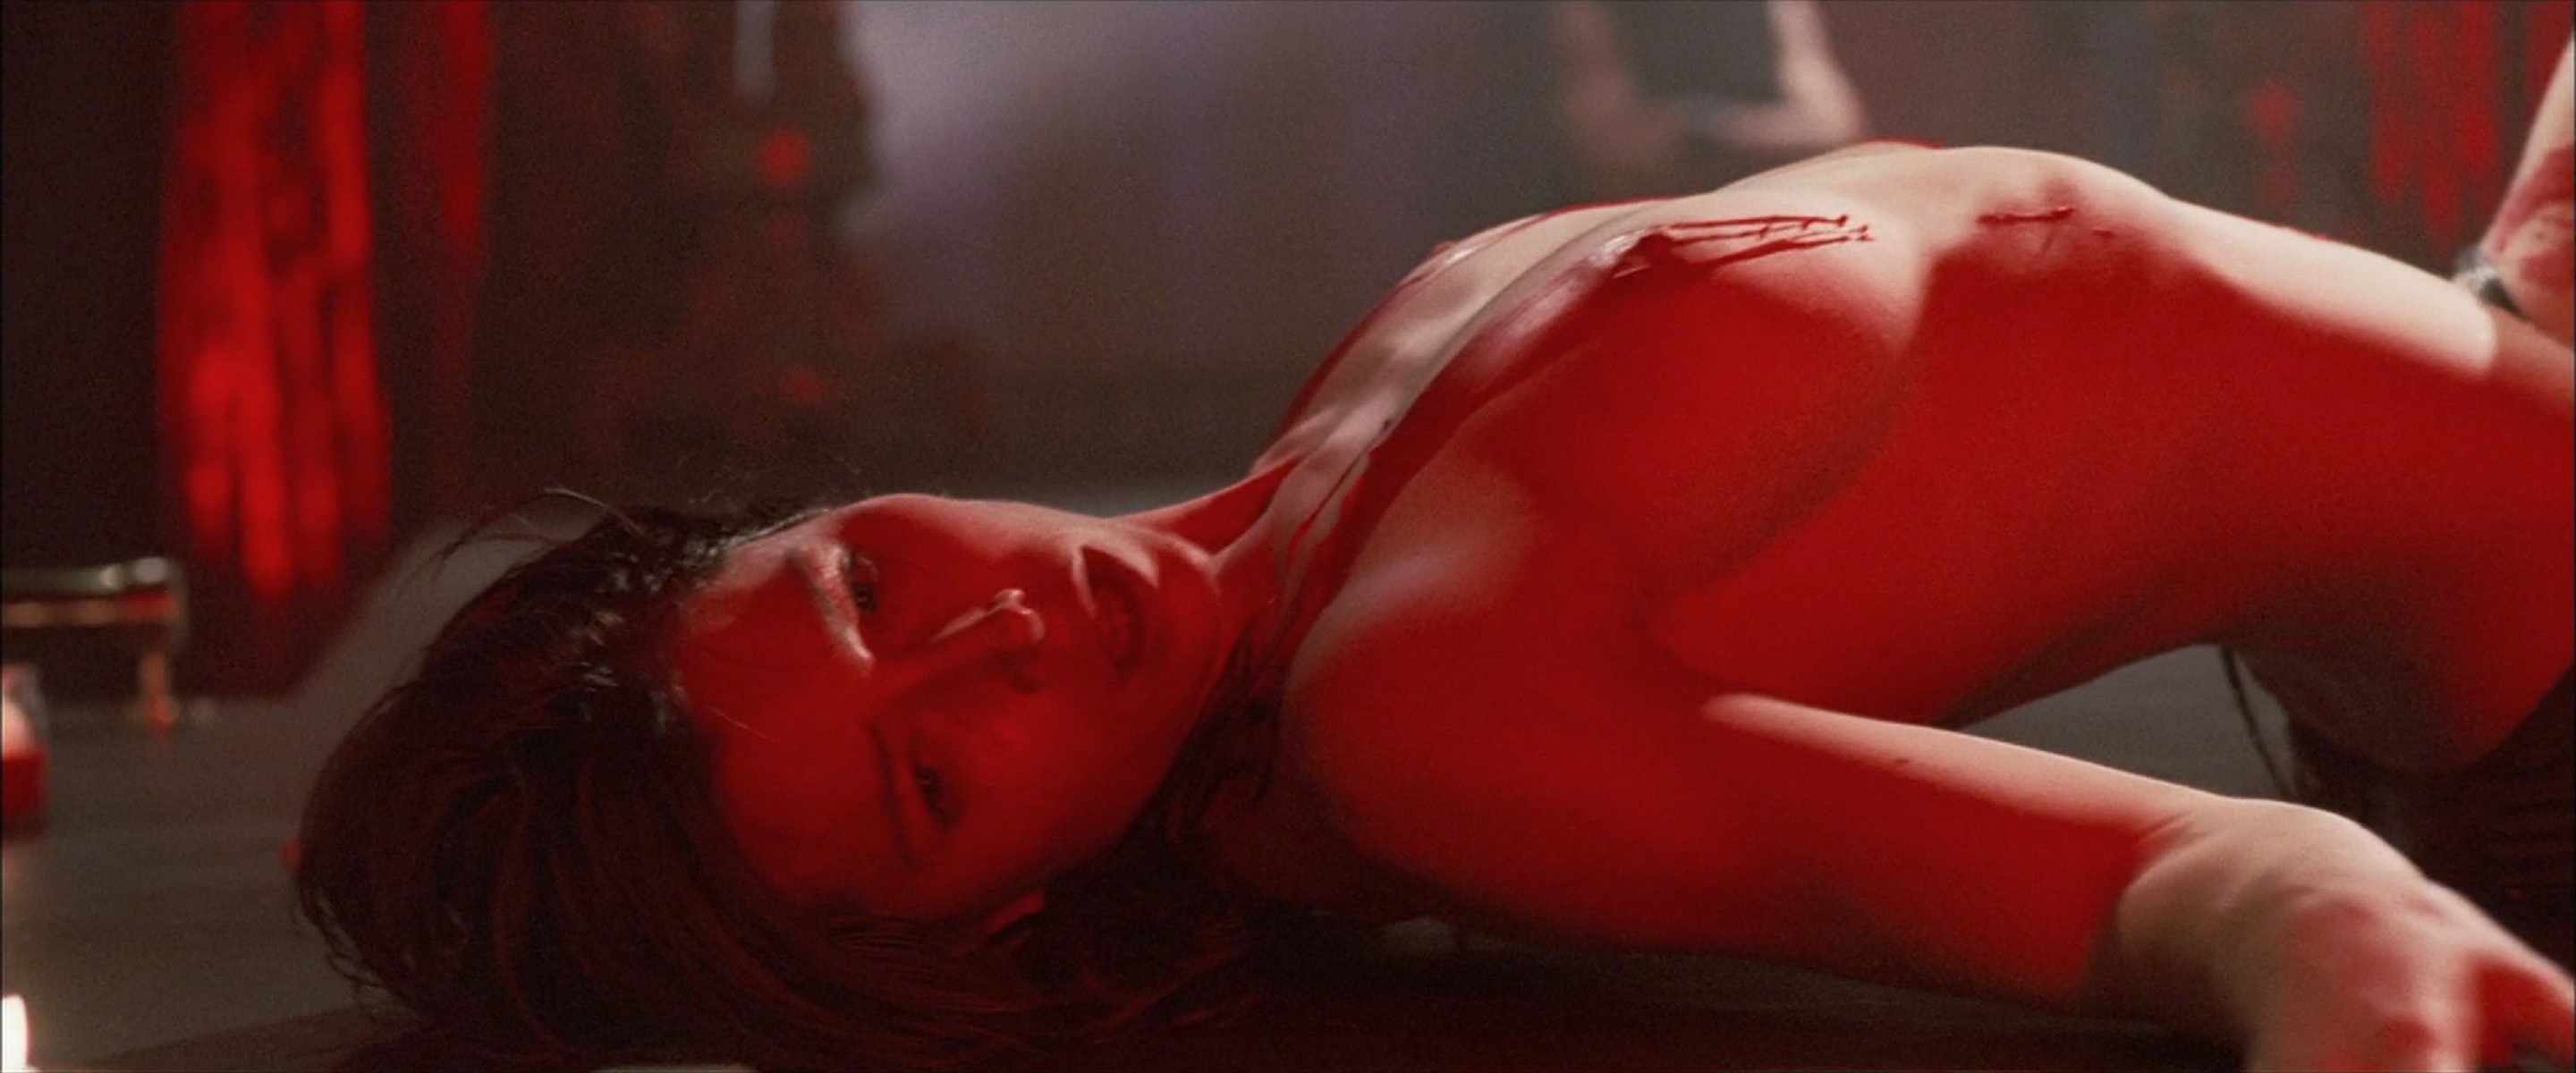 Jessica Biel Naked In Movie 54